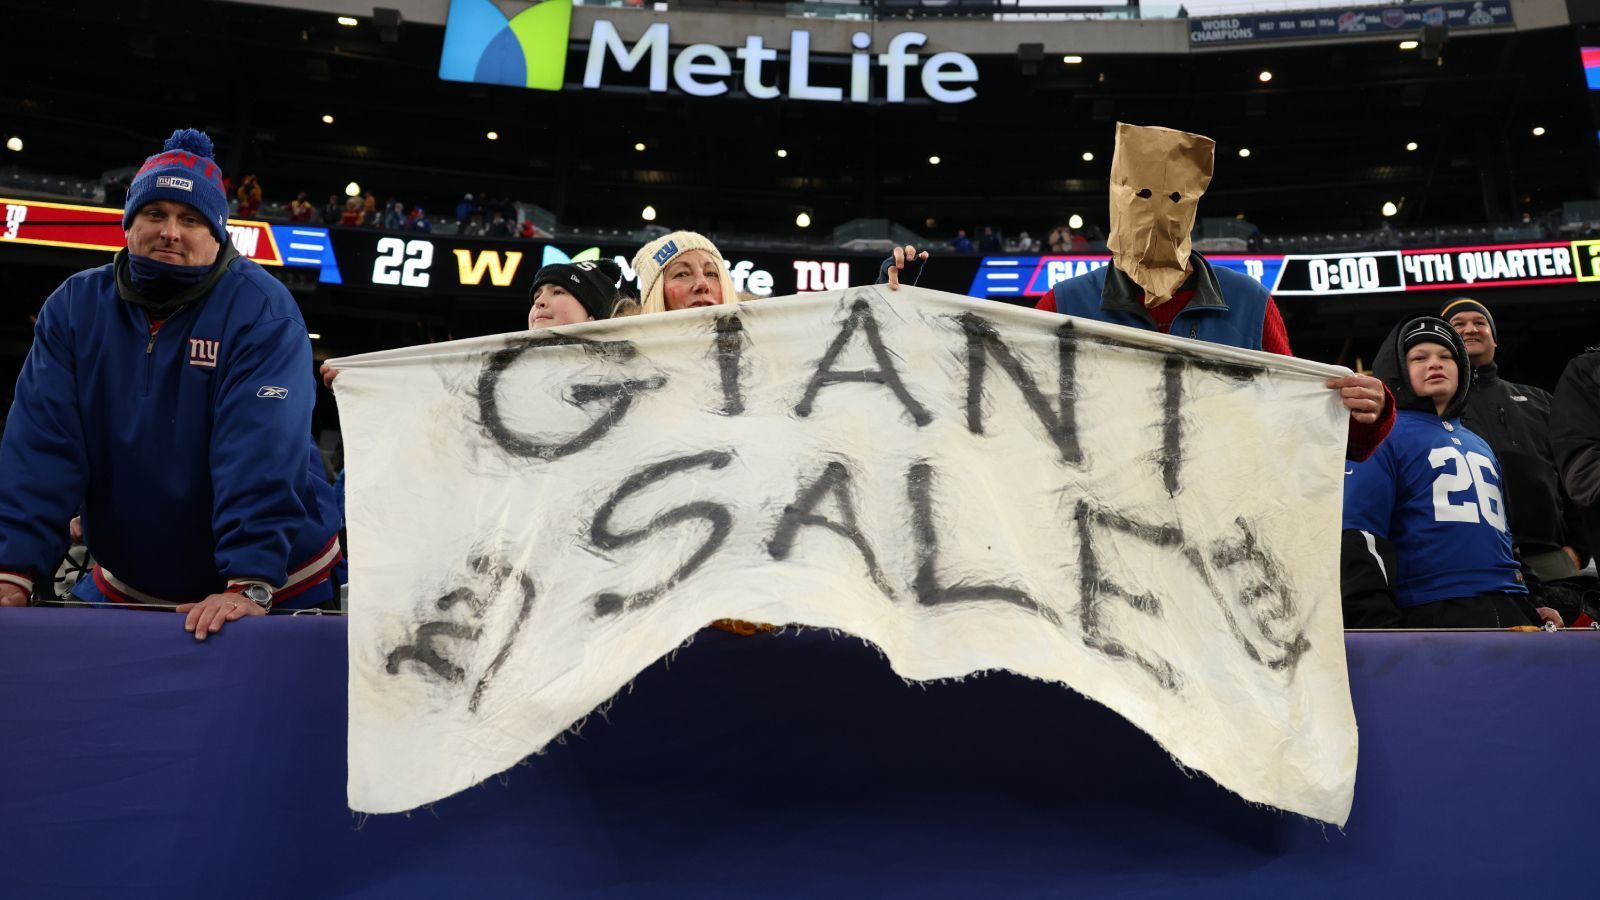 
                <strong>New York Giants</strong><br>
                Kaum eine Fanbase in der NFL musste in den vergangenen Jahren so viel leiden wie die der New York Giants. Das lag auch daran, weil sie einen Draft nach dem anderen in den Sand setzten. Im letzten Jahr holten die Giants beispielsweise Kadarius Toney in Runde eins, der die Saison mit null Touchdowns beendete. Mit dem neuen General Manager Joe Schoen muss endlich ein goldenes Händchen mit dem Draft her, damit die Giants sich endlich verbessern und aus der Misere rauskommen.
              